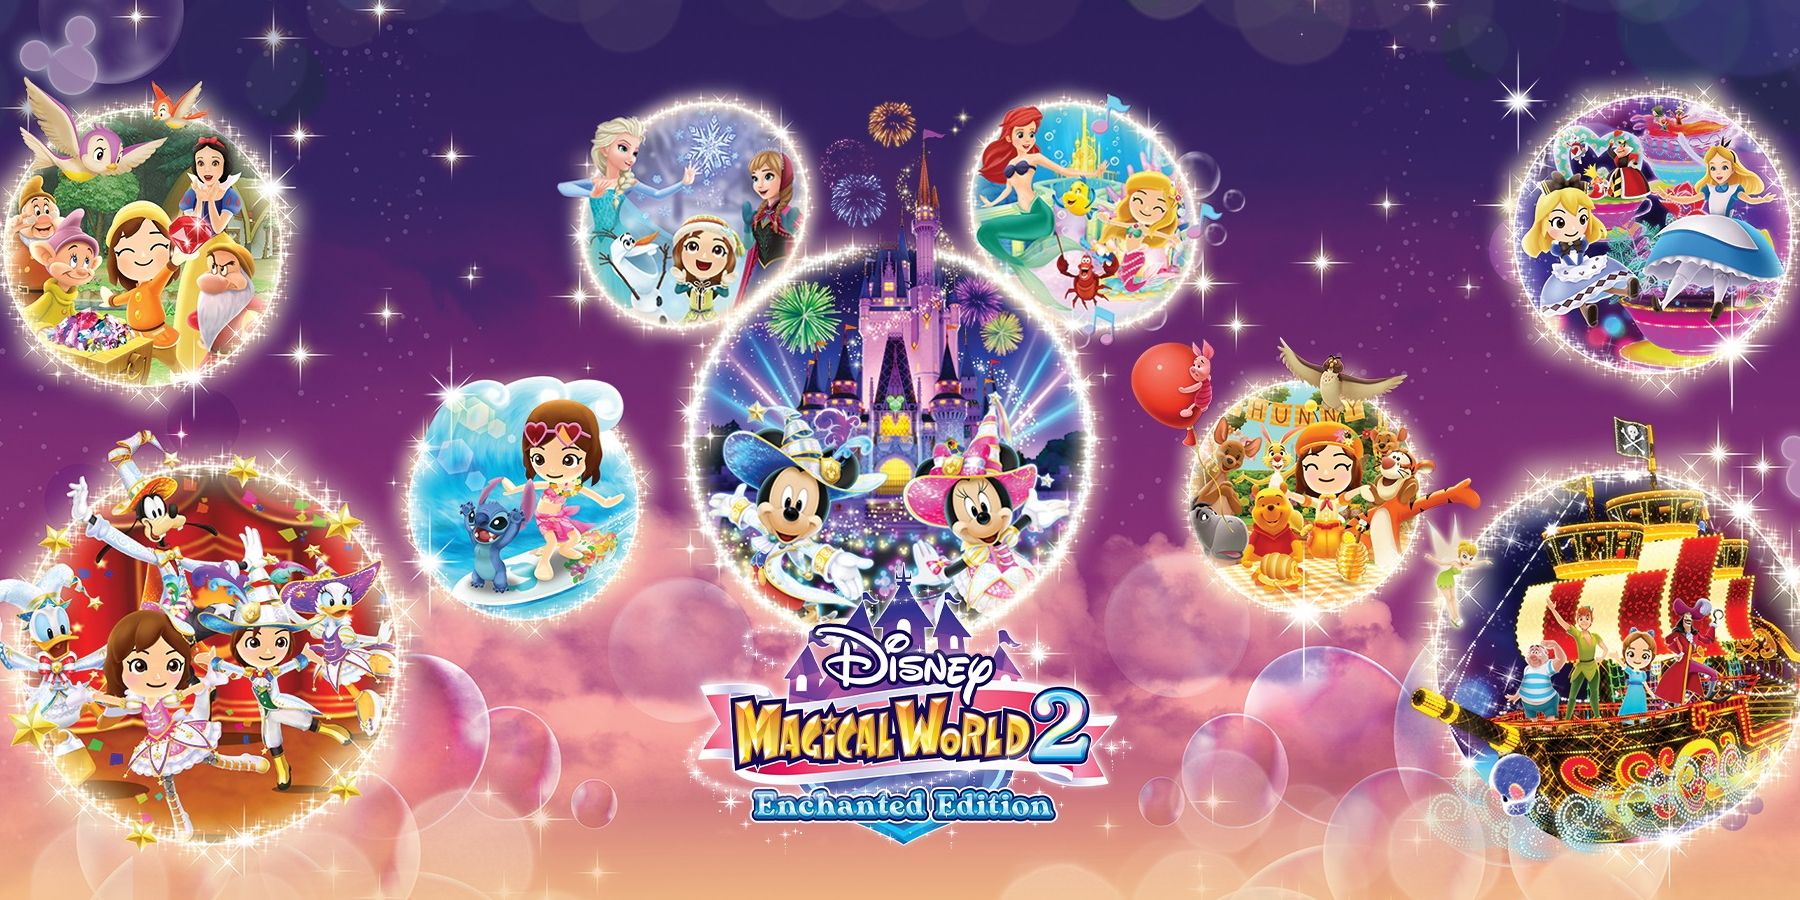 Disney Magical World 2: Enchanted Edition kommer att byta i år